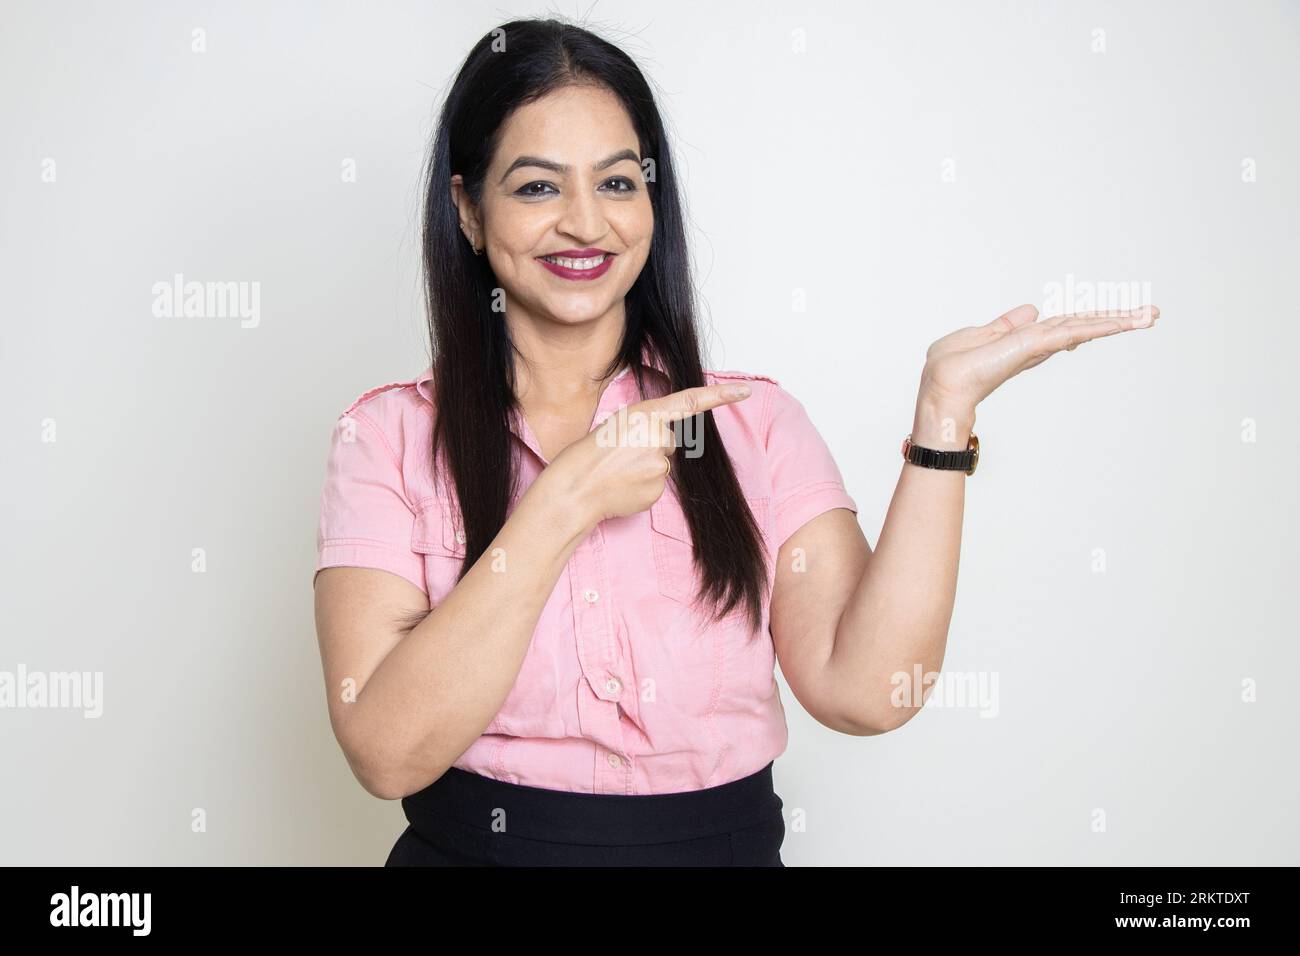 Femme indienne heureuse portant chemise rose formelle pointant vers les mains vides isolé sur fond blanc. Regardez ici, Publicité et promotion. Banque D'Images